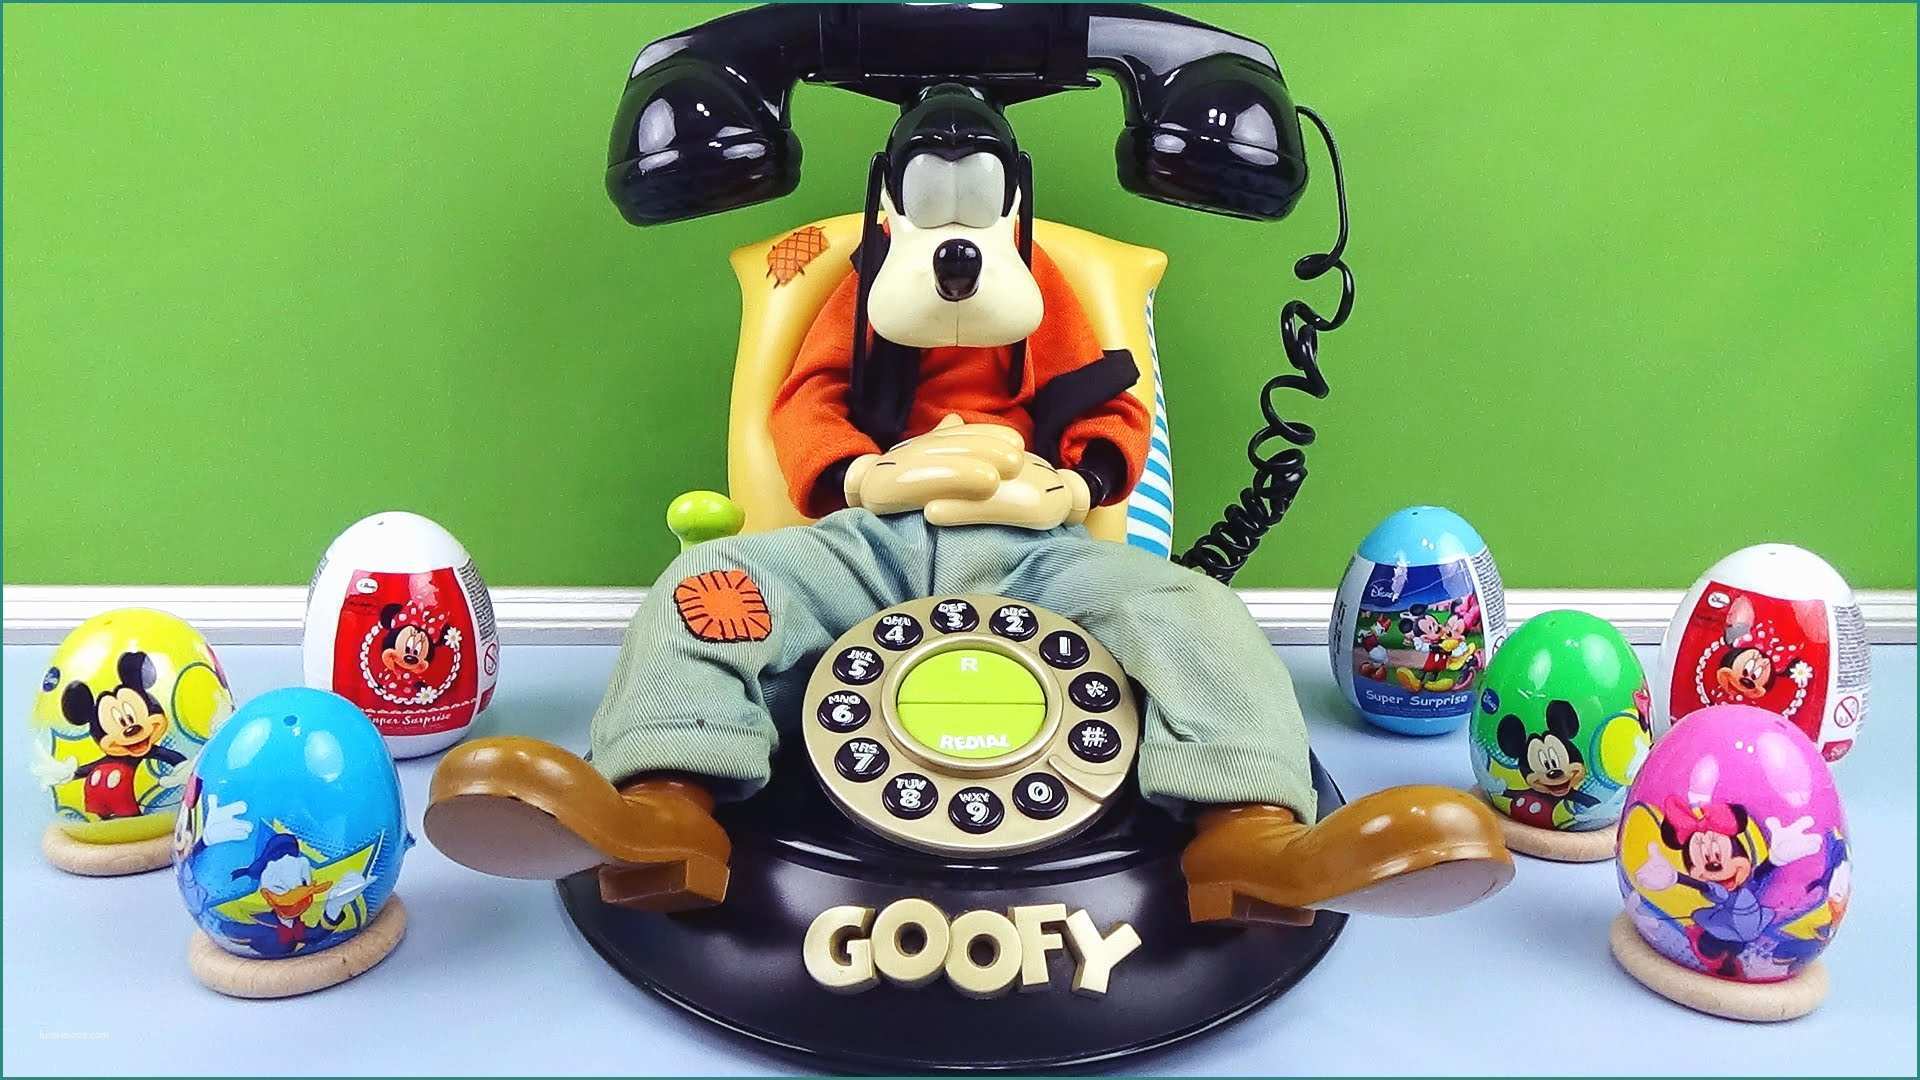 Foto Di Minnie E topolino E Disney Surprise Eggs Goofy Phone Mickey Mouse Huevos sorpresa Minnie